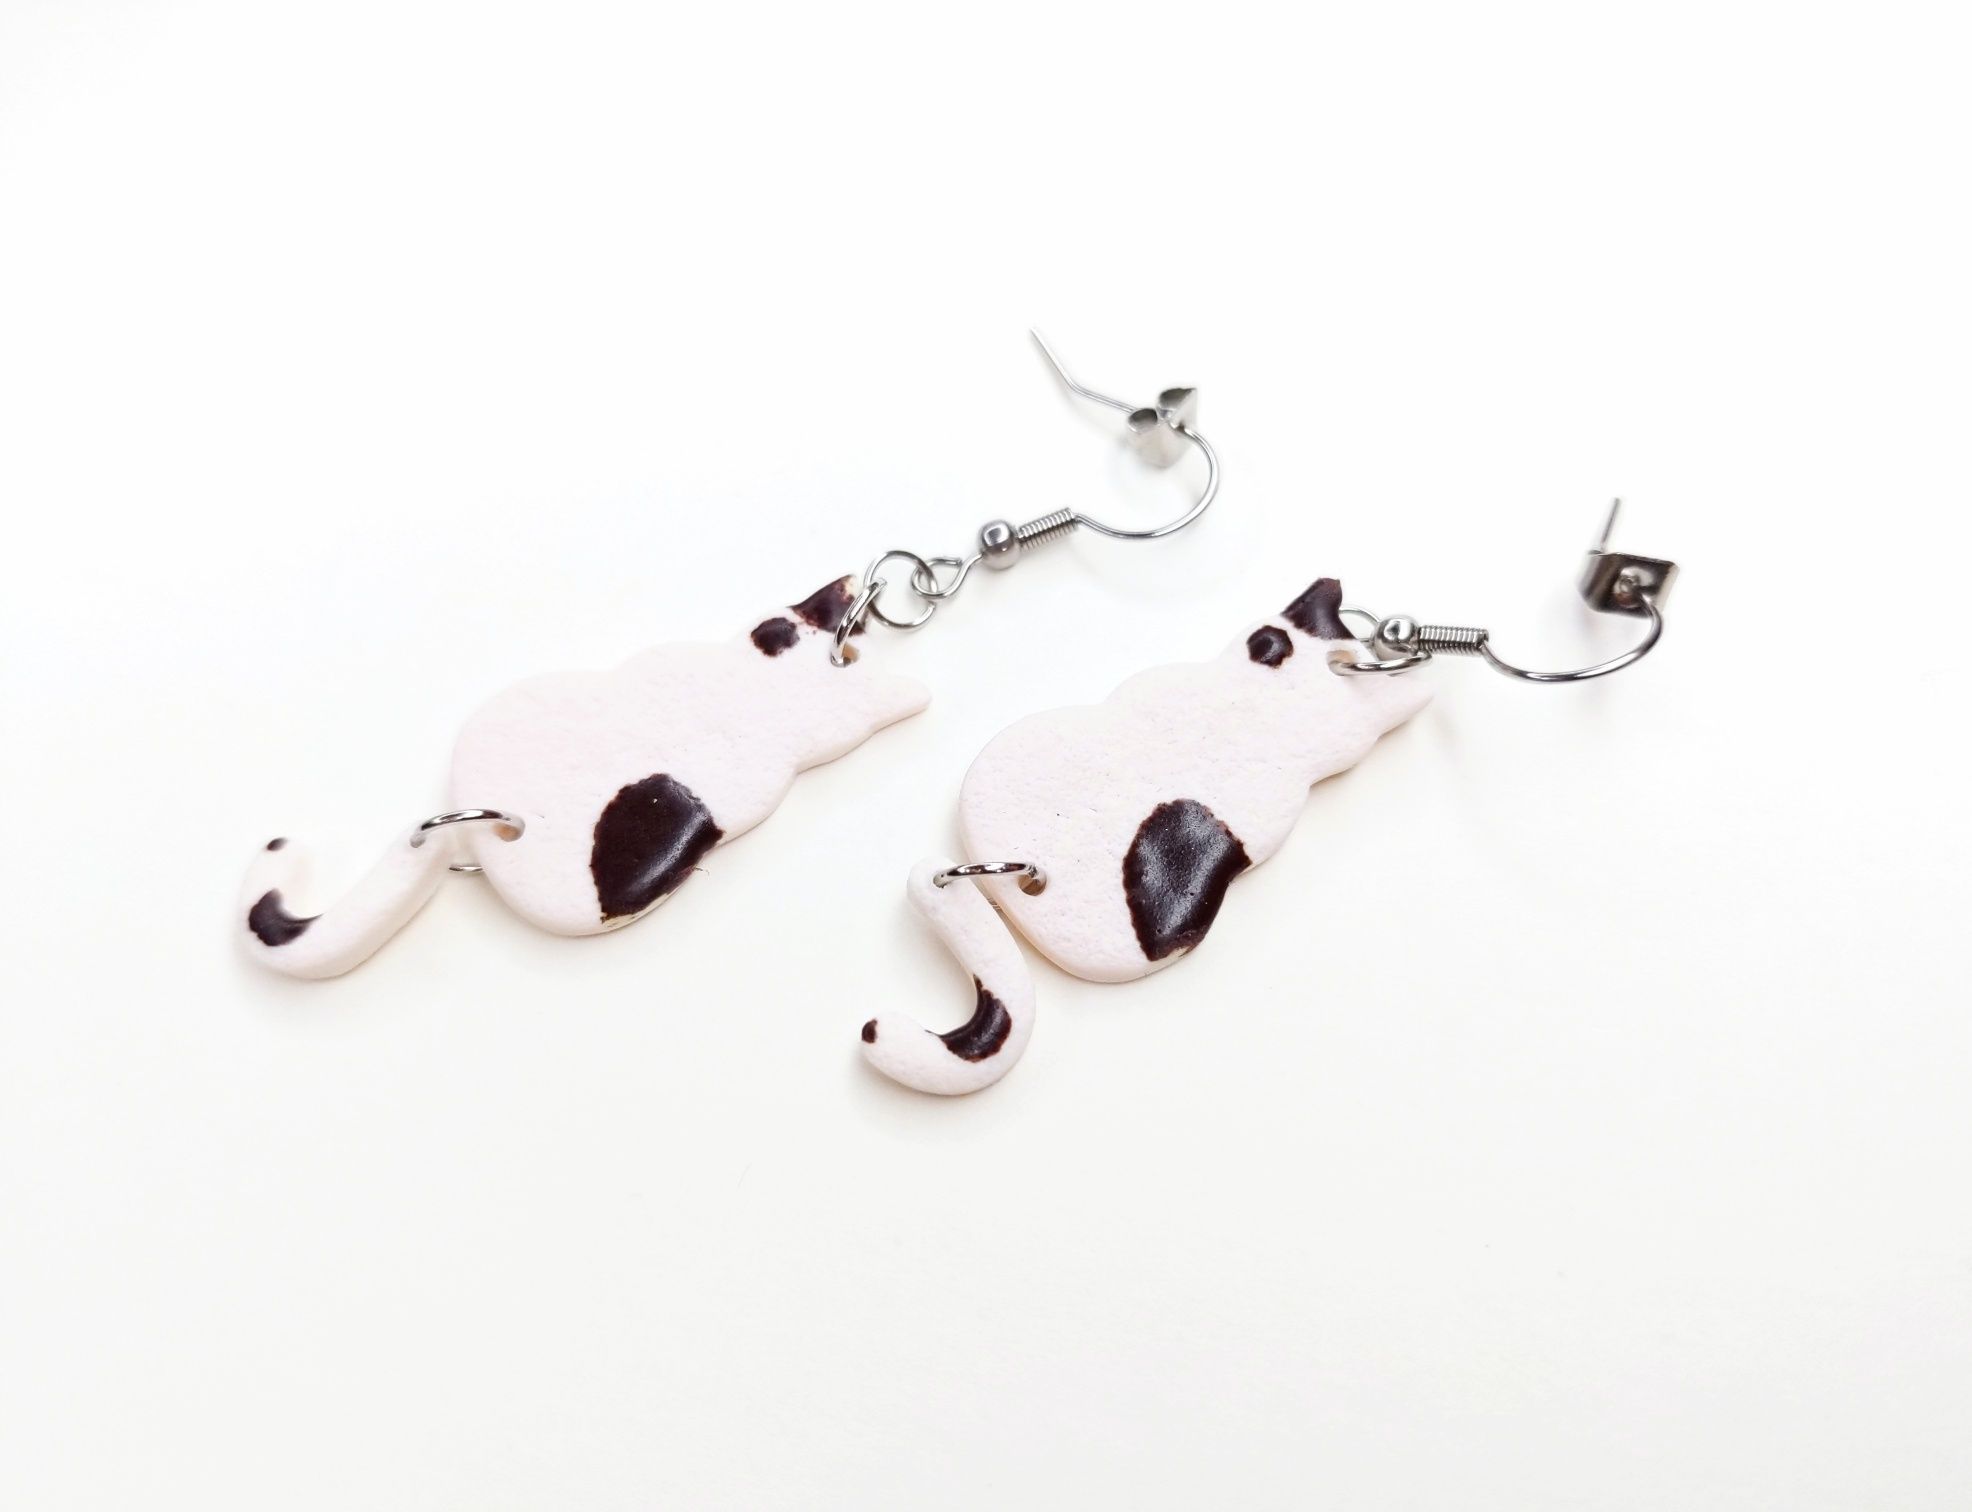 Kolczyki biało-brazowe koty handmade